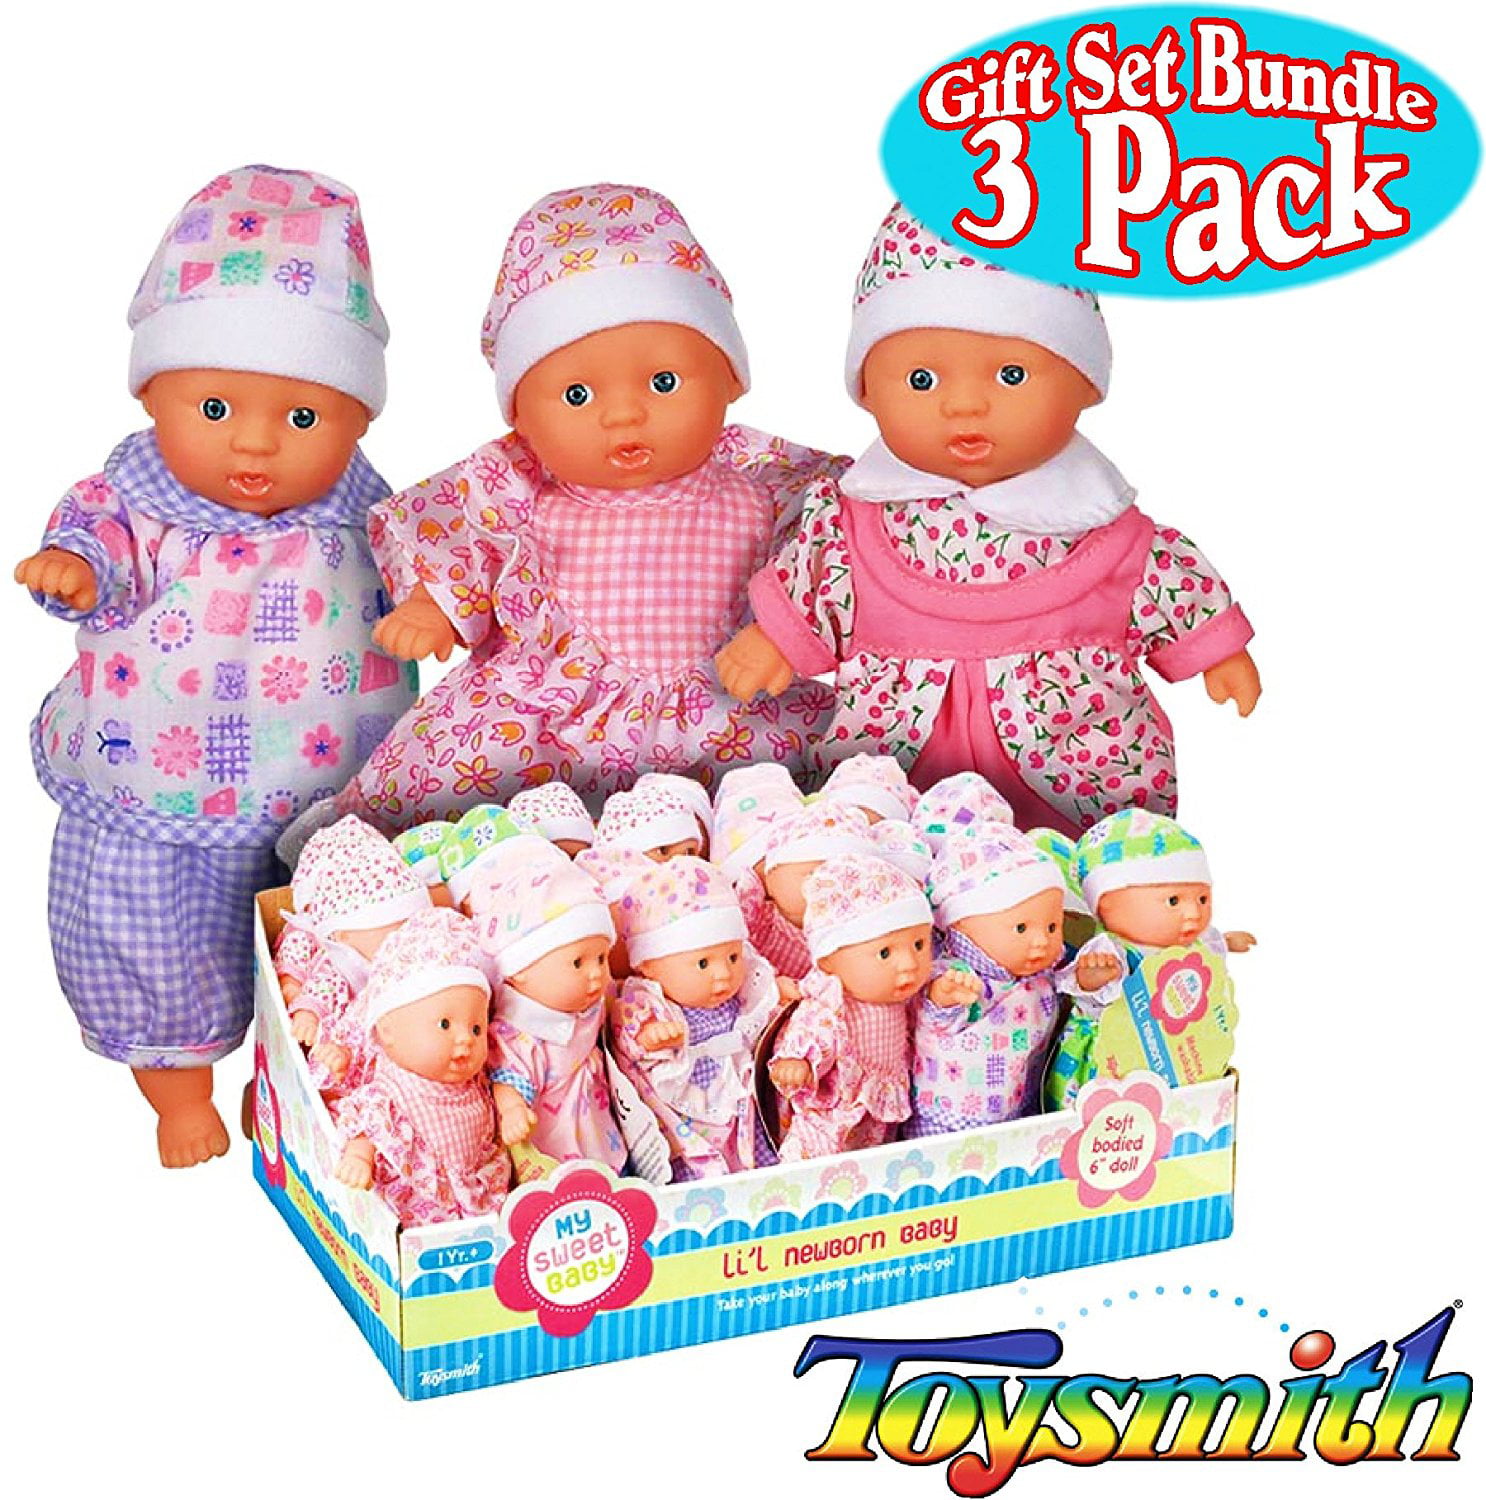 mini babies dolls